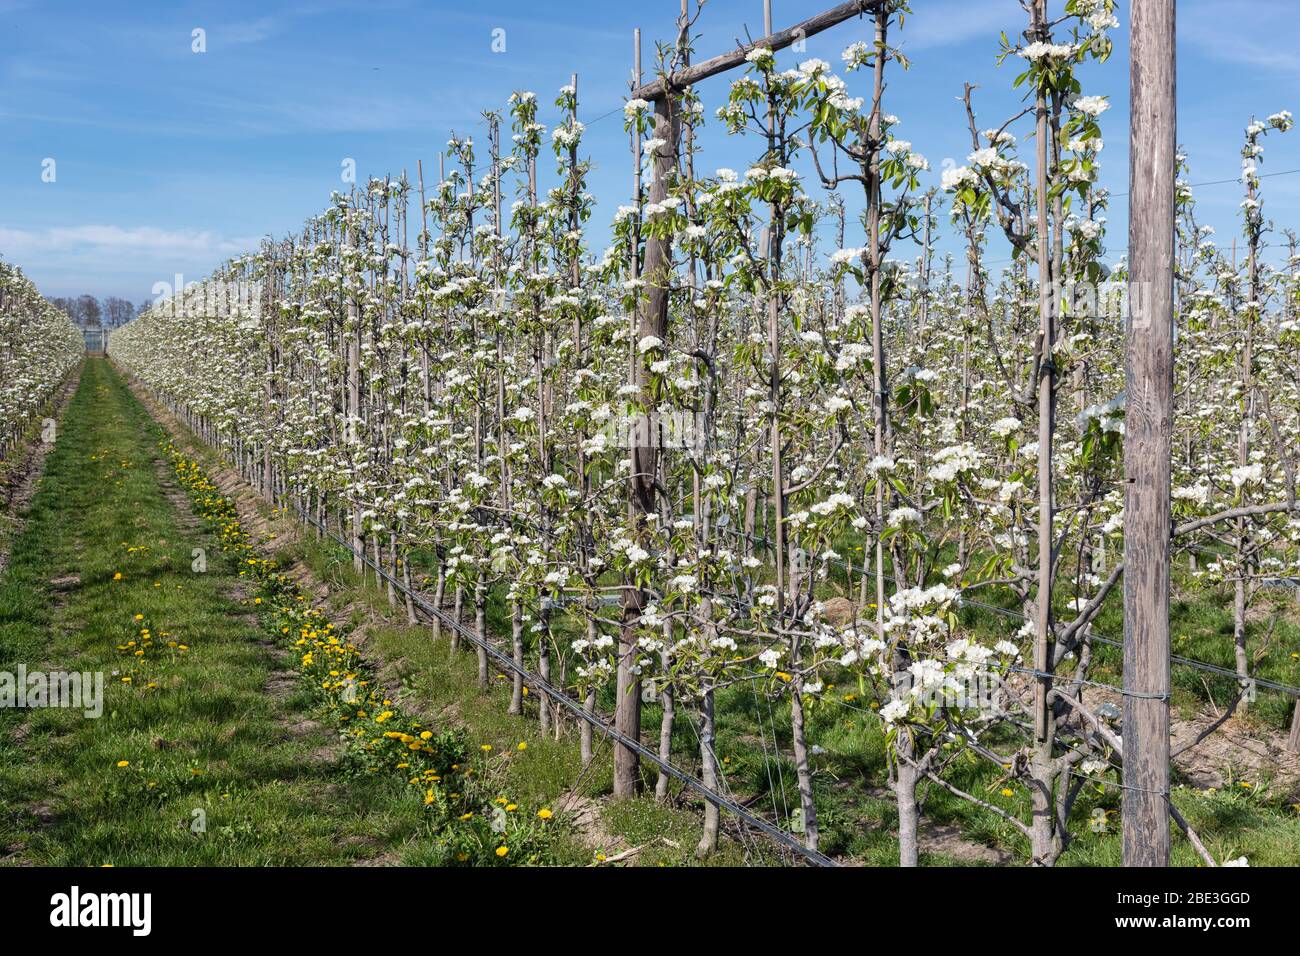 Frutteto di mele in primavera con filari di alberi in fiore Foto Stock